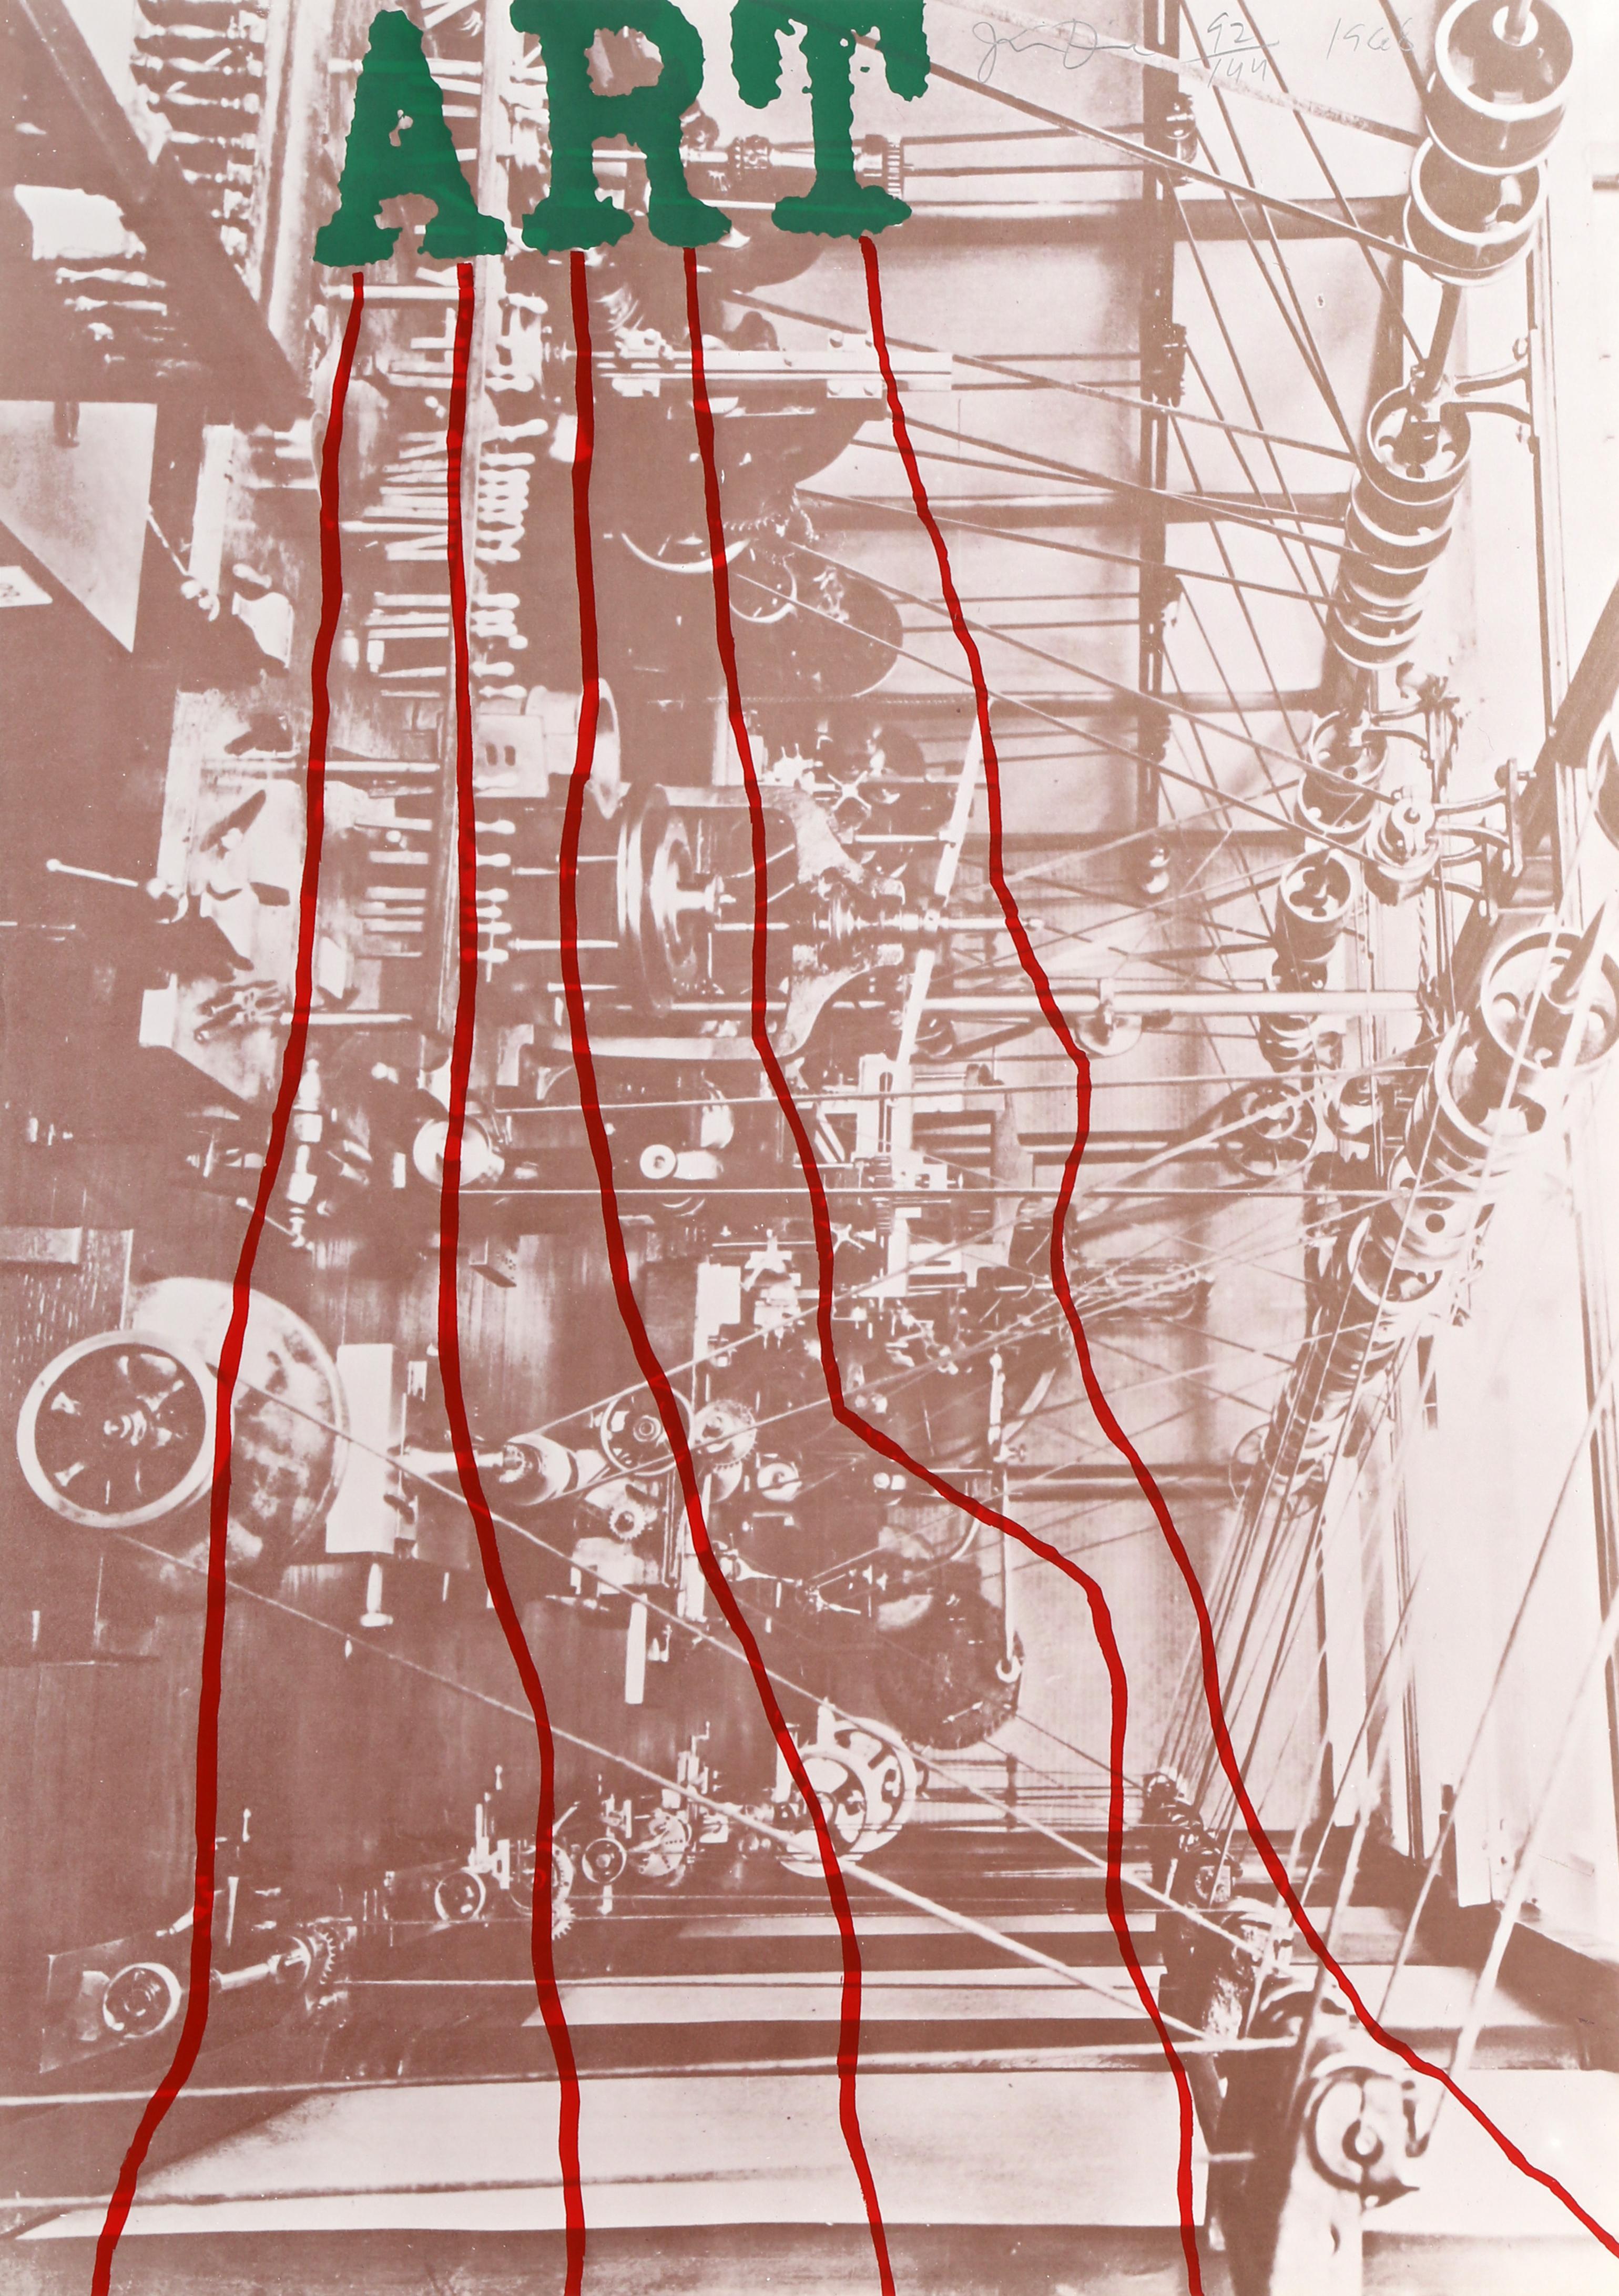 L'artiste : Jim Dine     
Titre : ART
Année : 1968
Médium : Lithographie, signée et numérotée au crayon
Edition :  92/144
Dimensions du papier : 88,9 x 62,87 cm